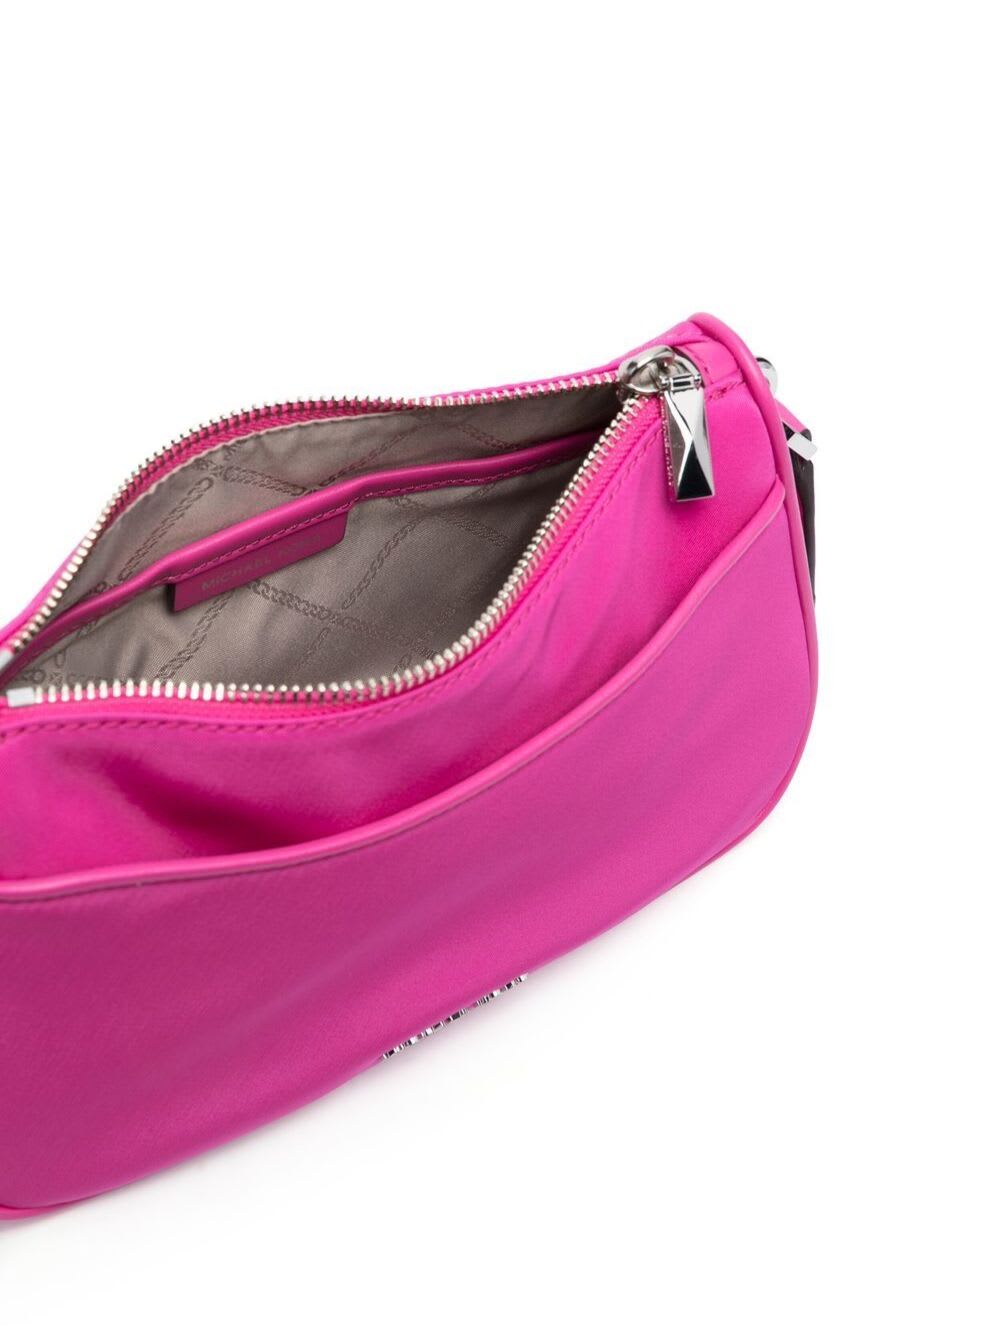 Michael Kors Jet Set Medium Nylon Gabardine Crossbody Bag With Case For  Apple Airpods Pro® In Pink | ModeSens